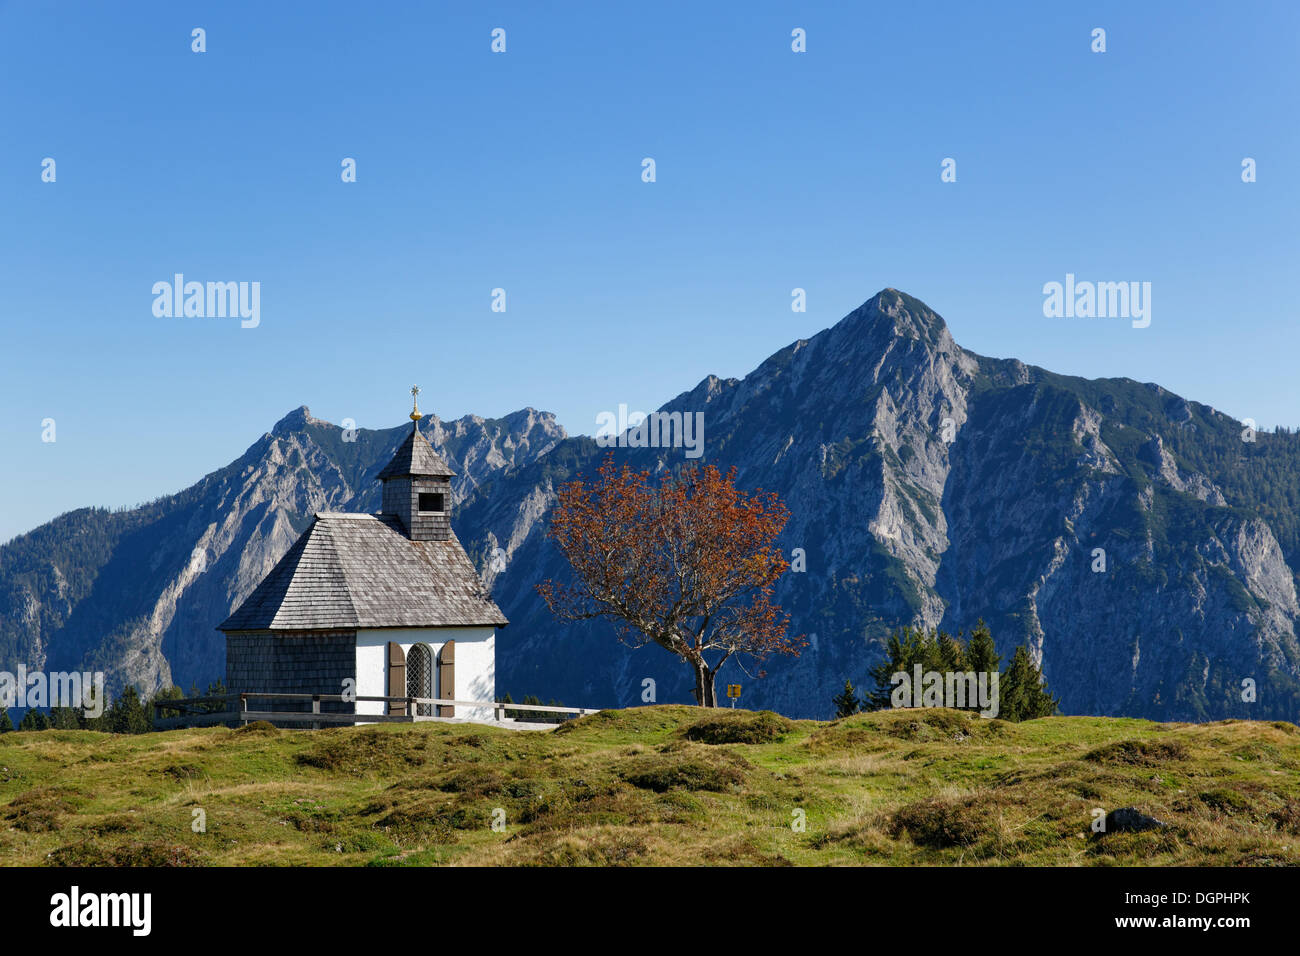 Kapelle auf der Postalm alpine Weide mit Rinnkogel Berg, Postalm, Postalm, Strobl, Salzkammergut, Salzburger Land, Österreich Stockfoto